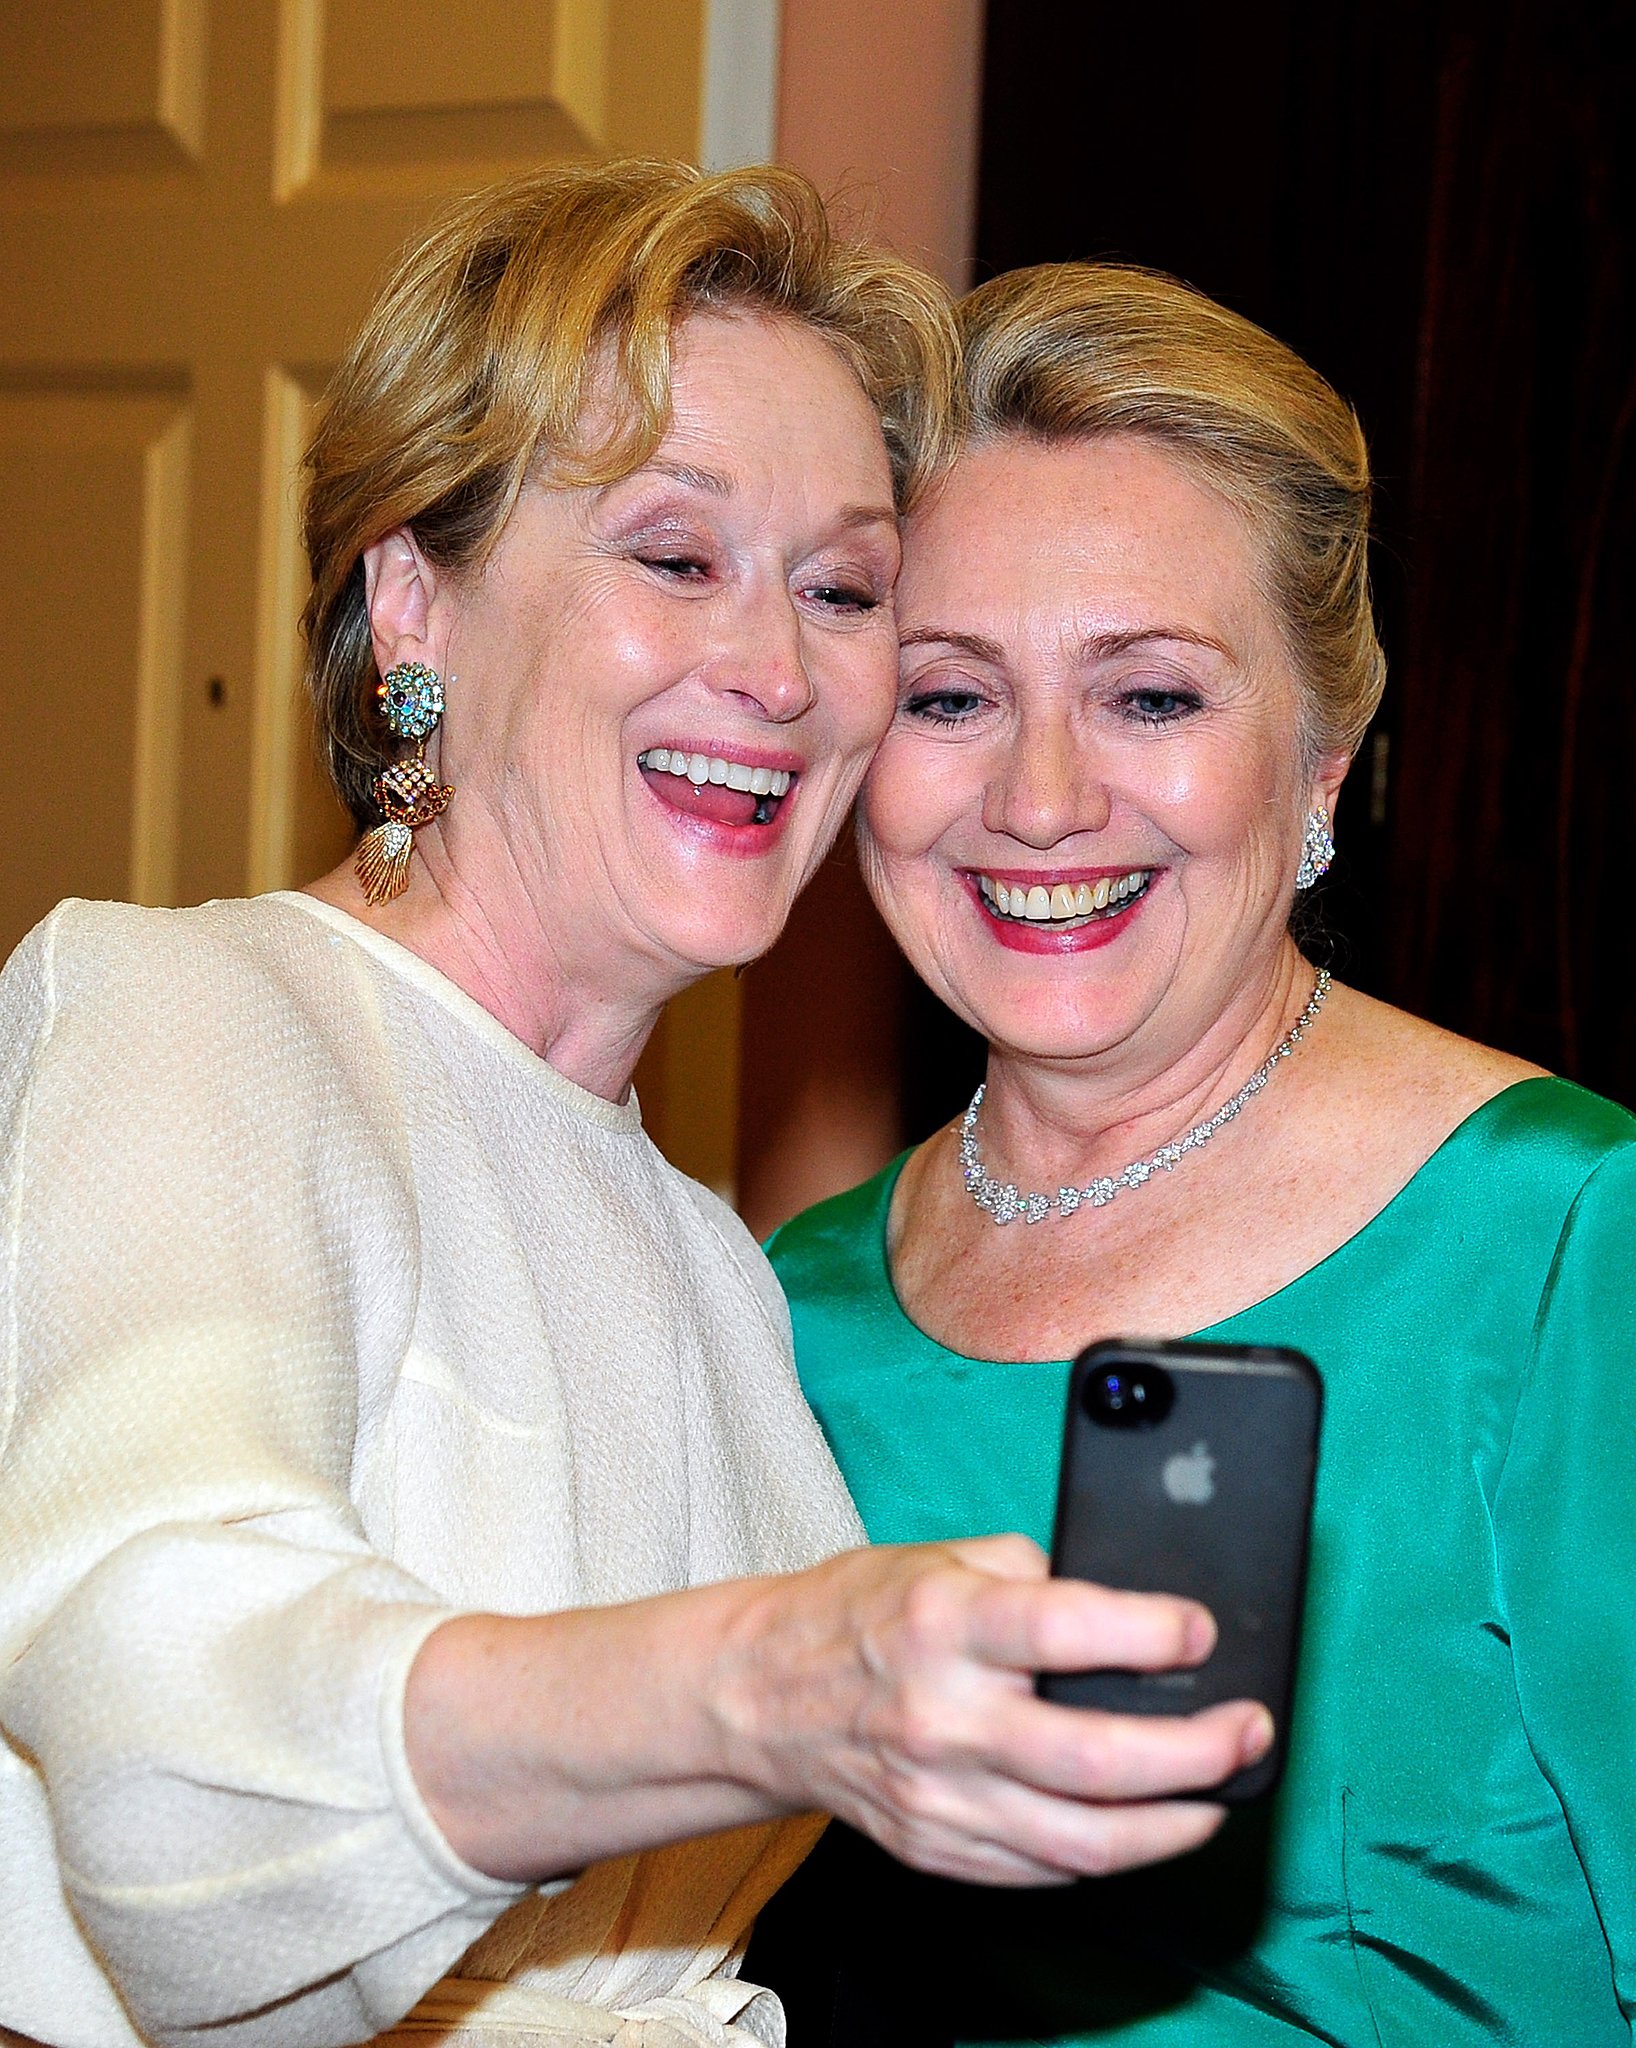 Meryl-Streep-couldnt-pass-up-opportunity-take-selfie.jpg